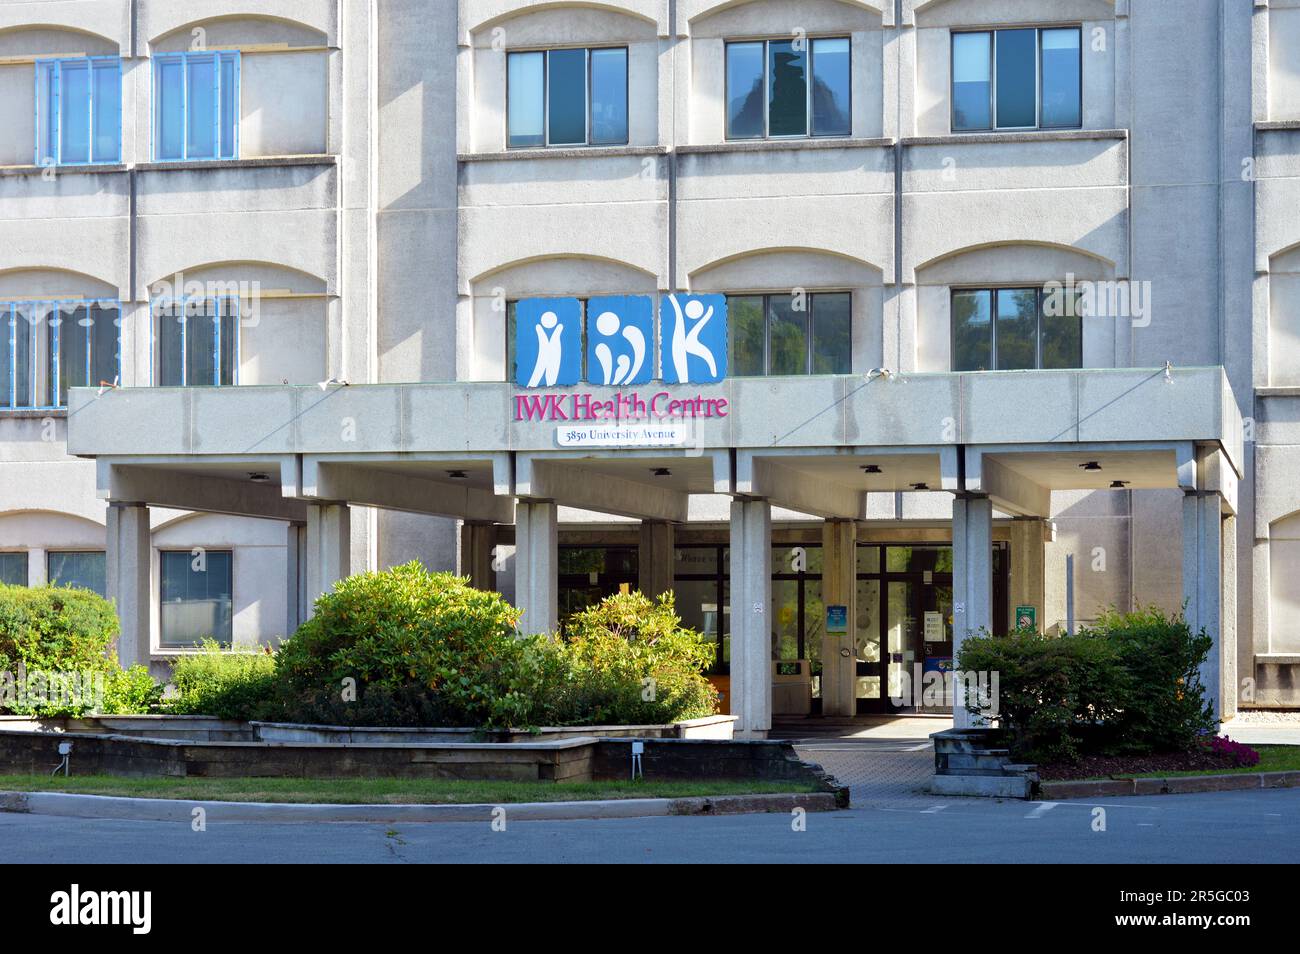 Auvent en béton à l'entrée du Centre de santé IWK, un hôpital public pour enfants à Halifax, en Nouvelle-Écosse, au Canada Banque D'Images